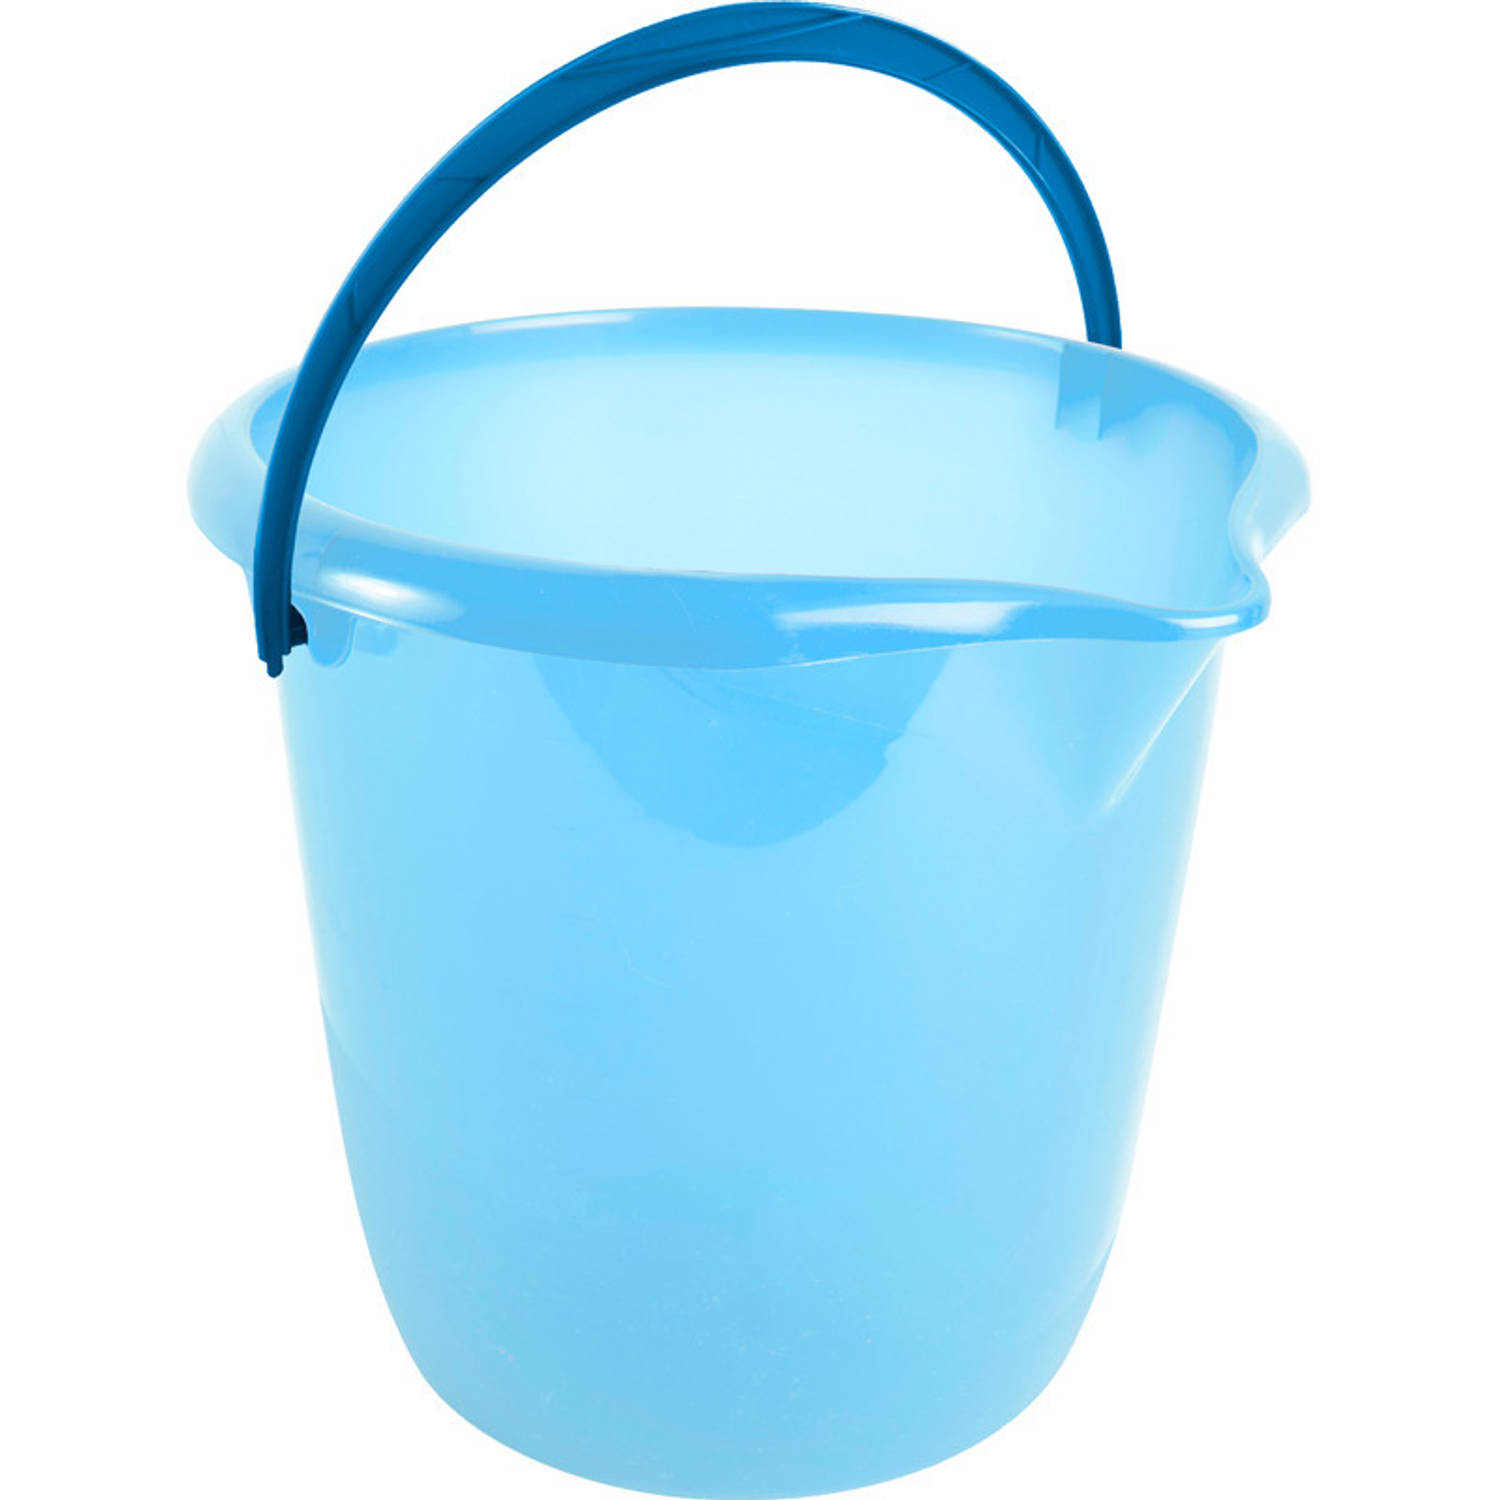 Blauwe schoonmaak emmers/huishoud emmers 10 liter van diameter 28 cm en hoogte 26 cm